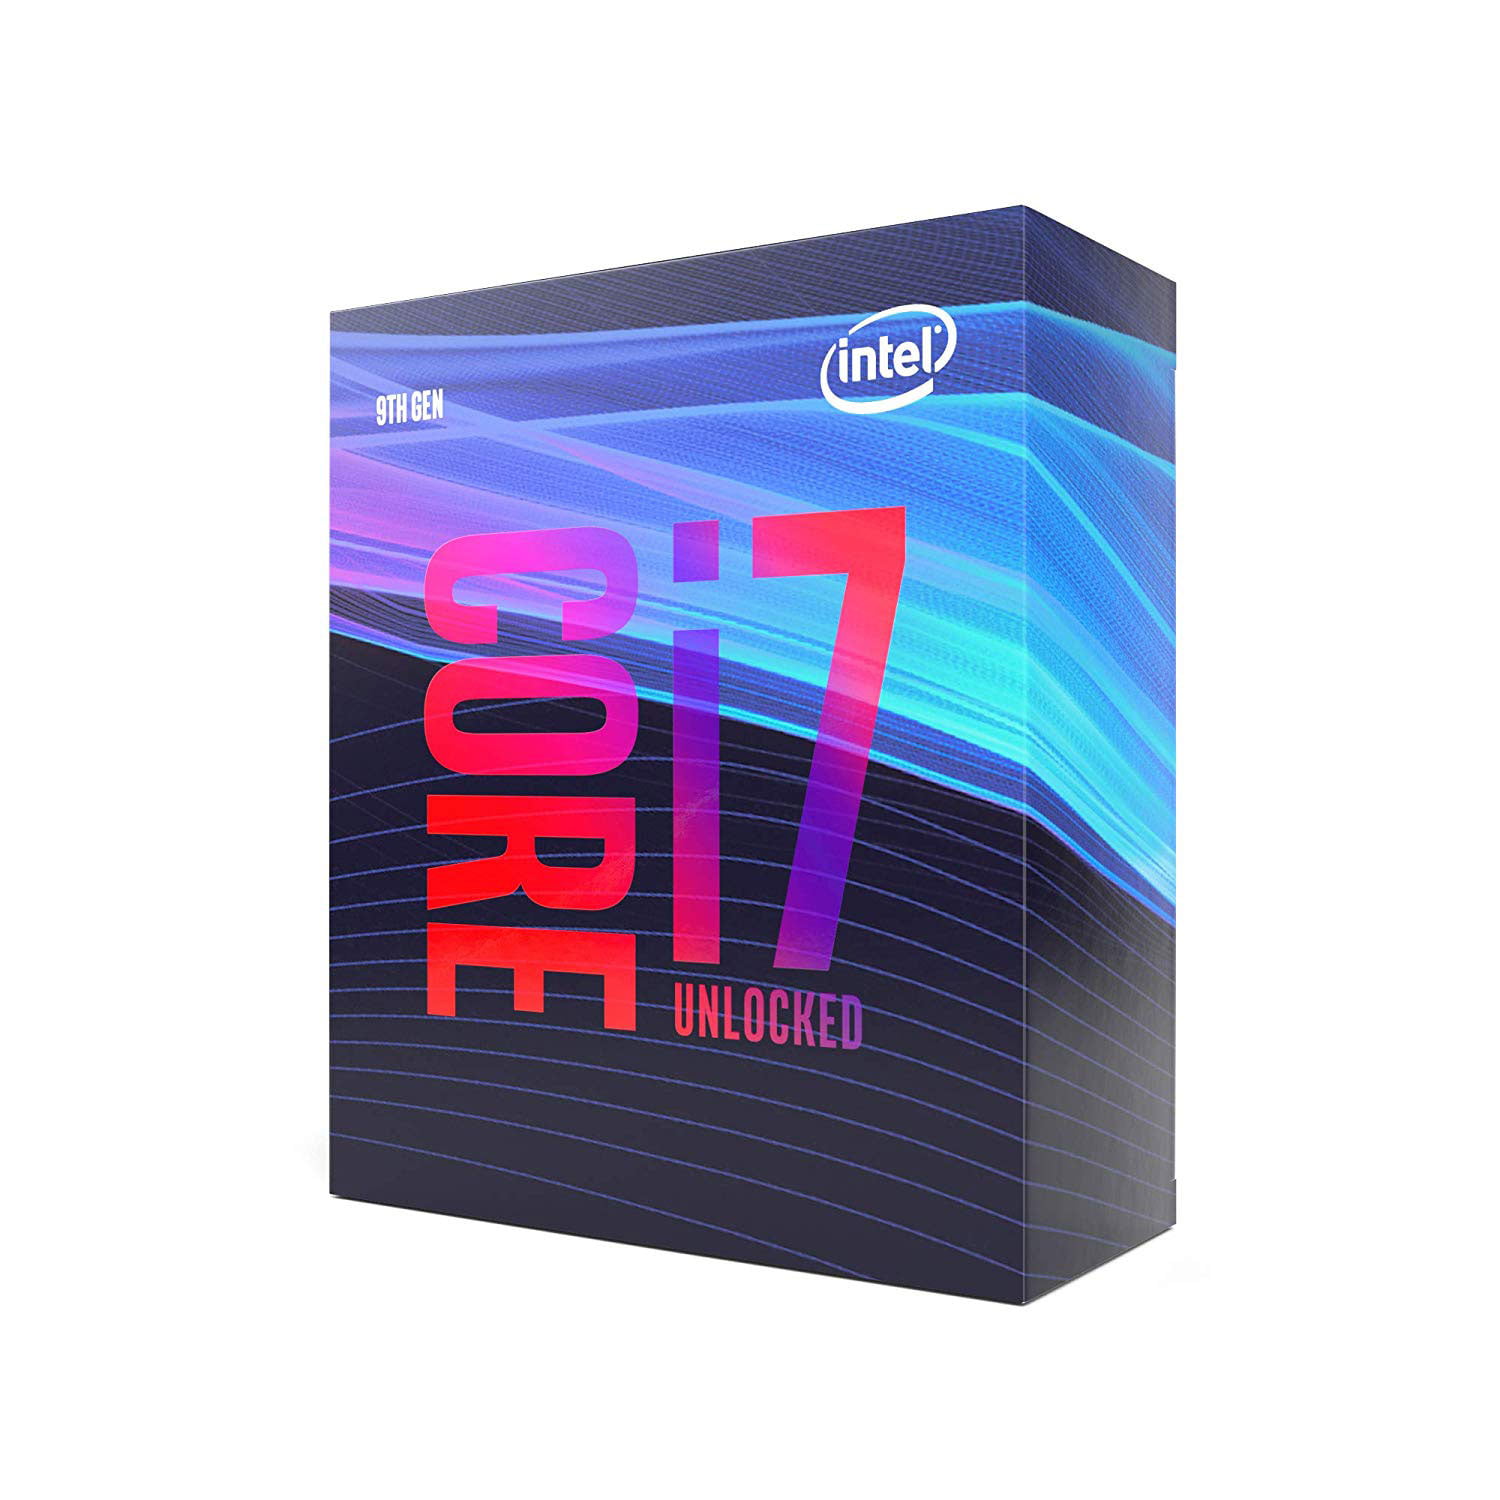 Intel Core I7 9700k Octa Core 8 Core 3 6ghz Processor Retail Pack Walmart Com